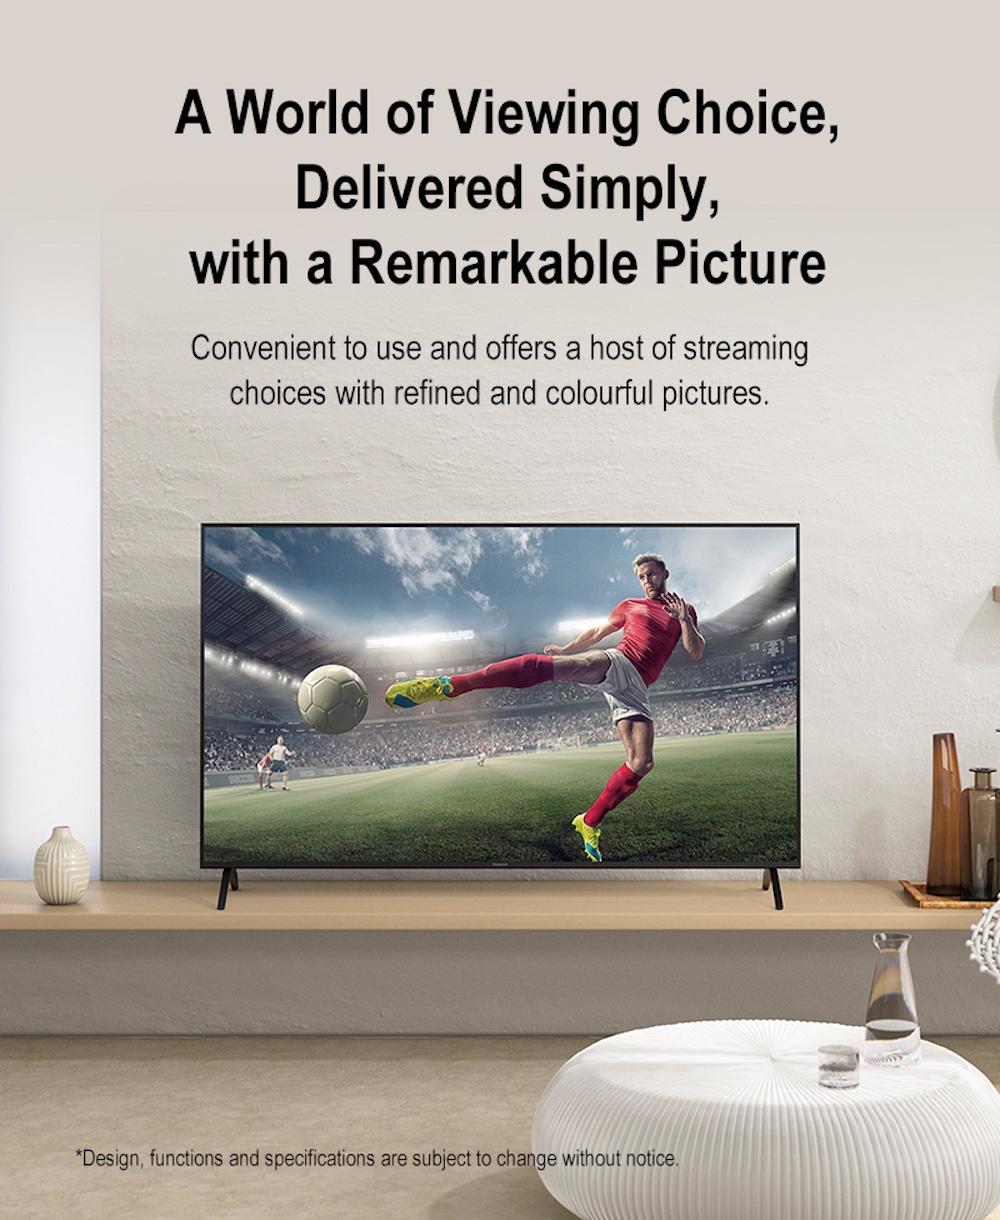 รายละเอียดเพิ่มเติมเกี่ยวกับ Panasonic LED TV TH-65JX800T 4K TV ทีวี 65 นิ้ว Android TV Google Assistant Dolby Vision Chromecast แอนดรอยด์ทีวี